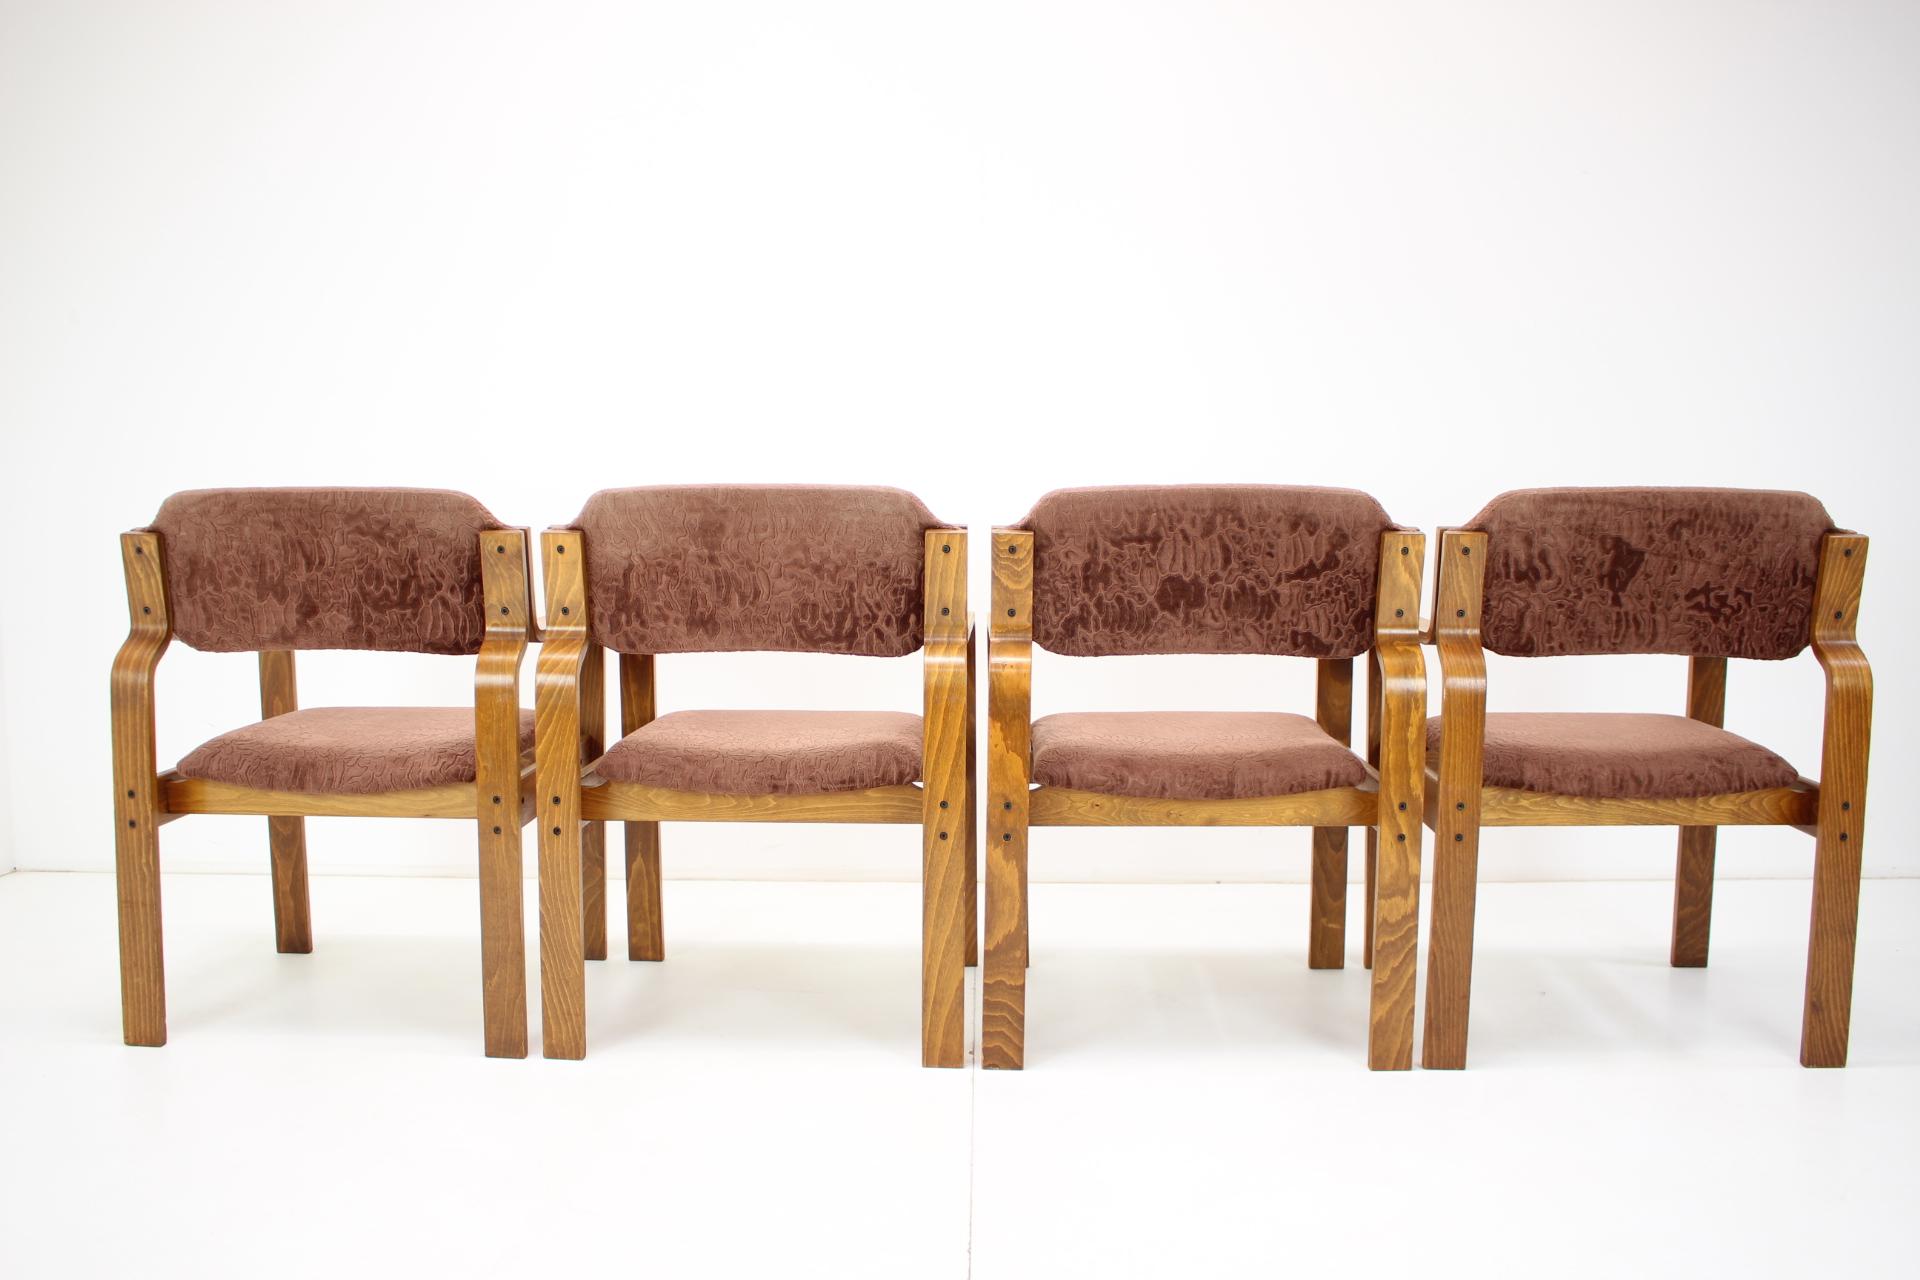 Mid-20th Century Set of Four Dining Chairs Designed Ludvík Volák for Dřevopodnik Holešov, 1960's